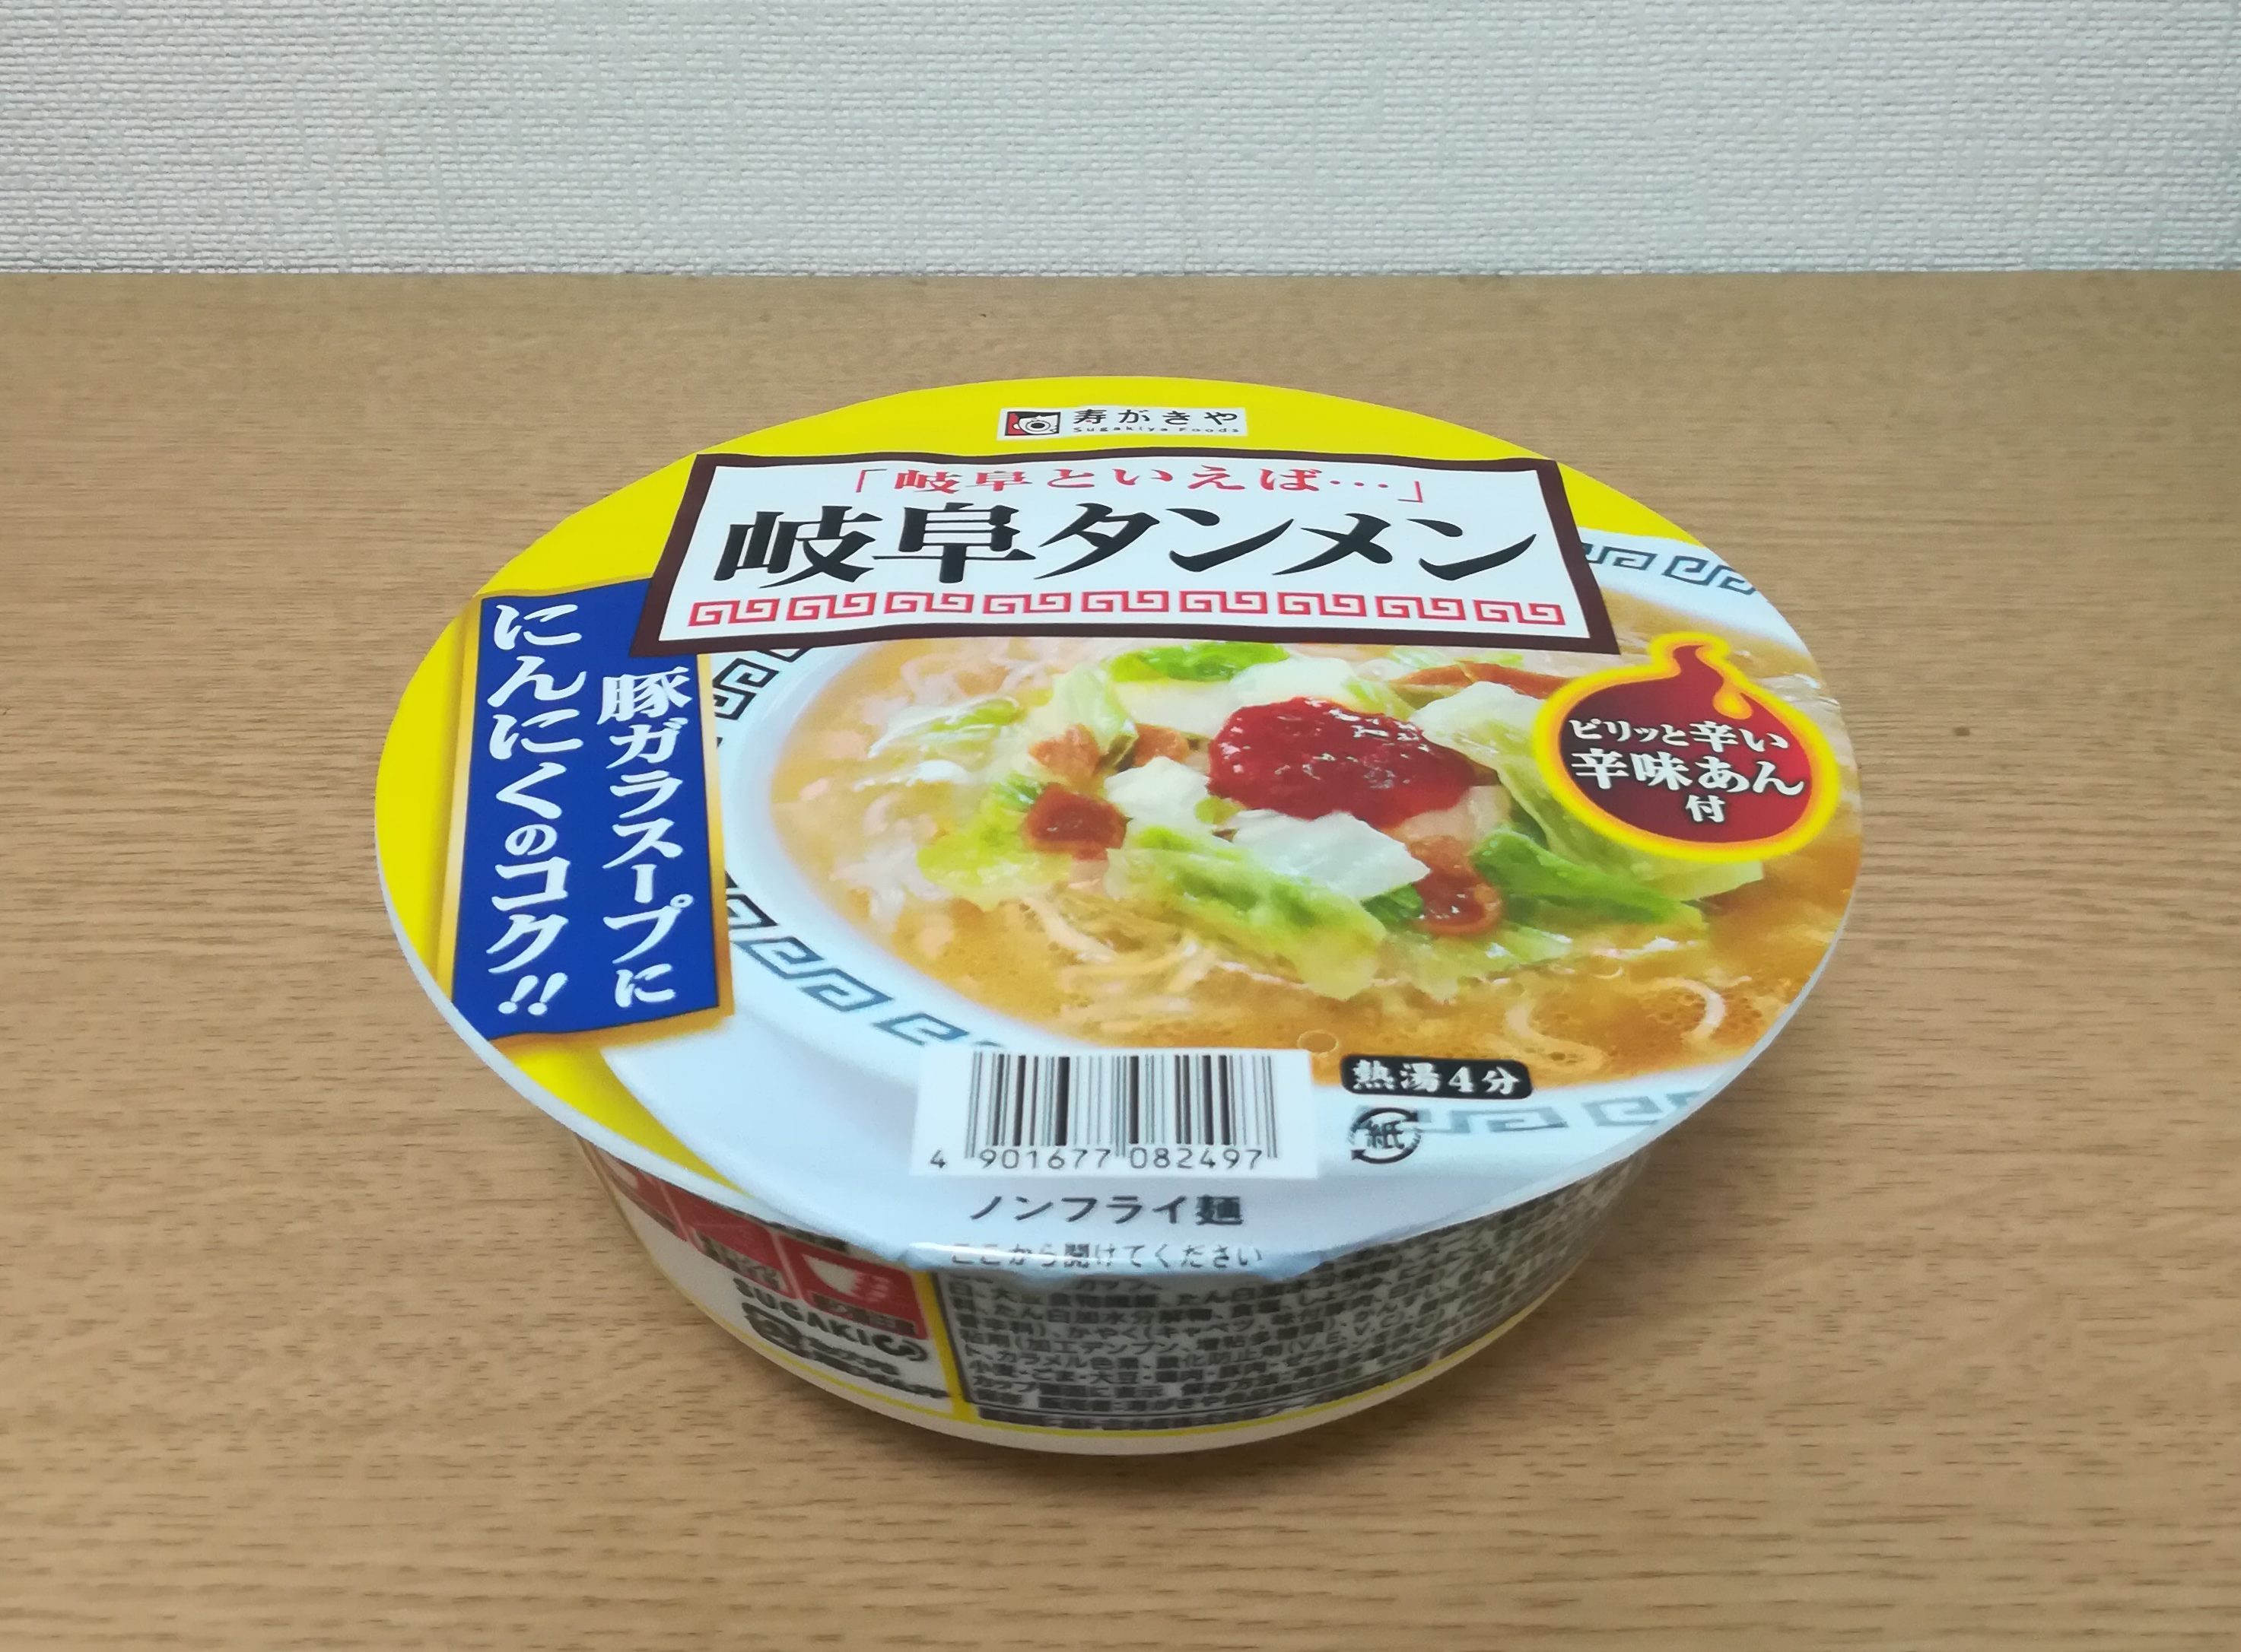 寿がきや 岐阜タンメン の感想 19年3月25日発売 ノンフライカップ麺